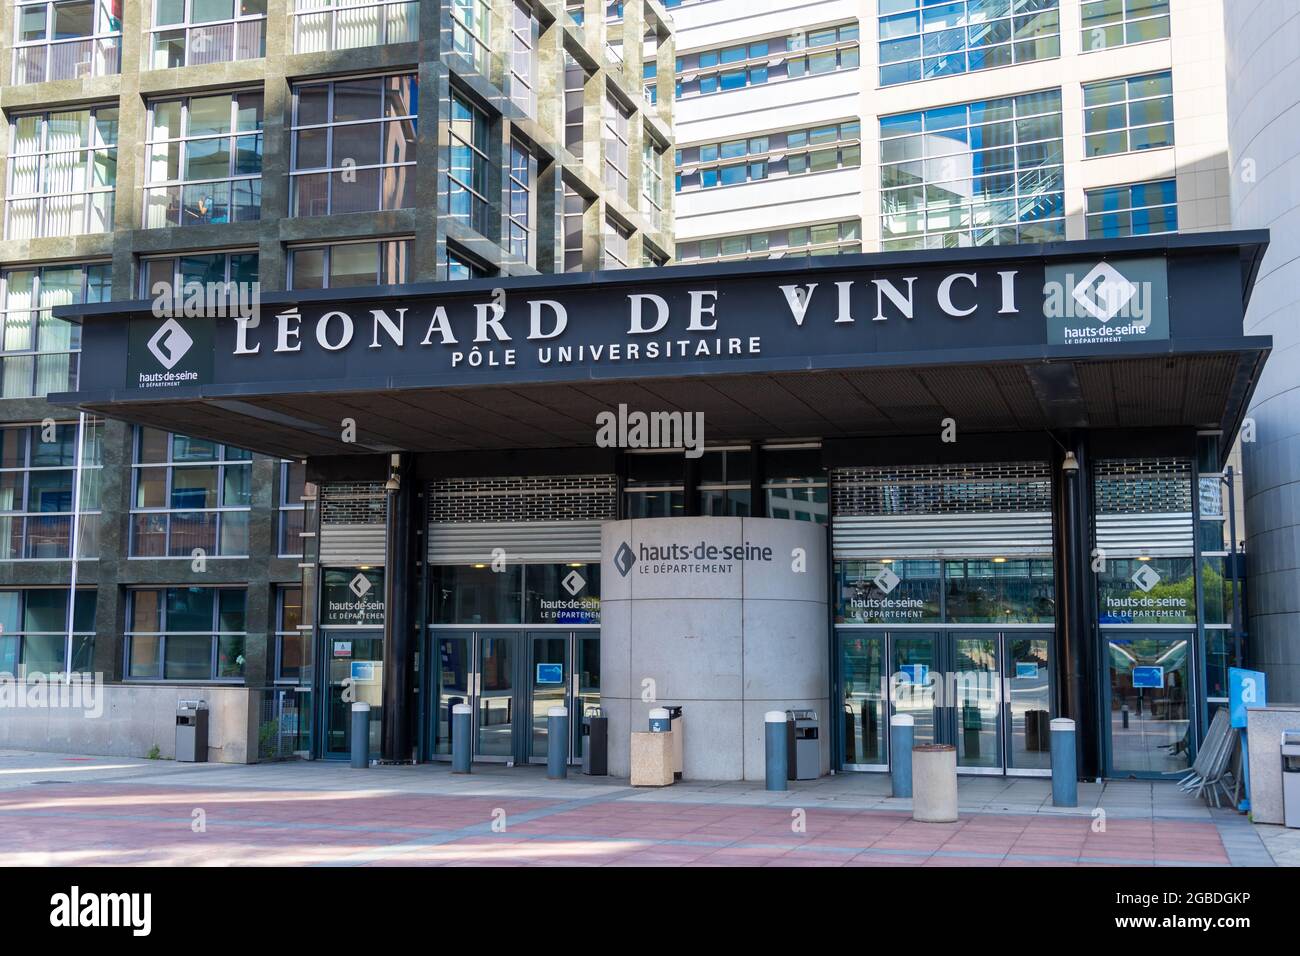 Ingresso principale all'Pôle Universitaire Léonard de Vinci, istituto privato di istruzione superiore situato nel quartiere degli affari di Parigi-la Défense Foto Stock